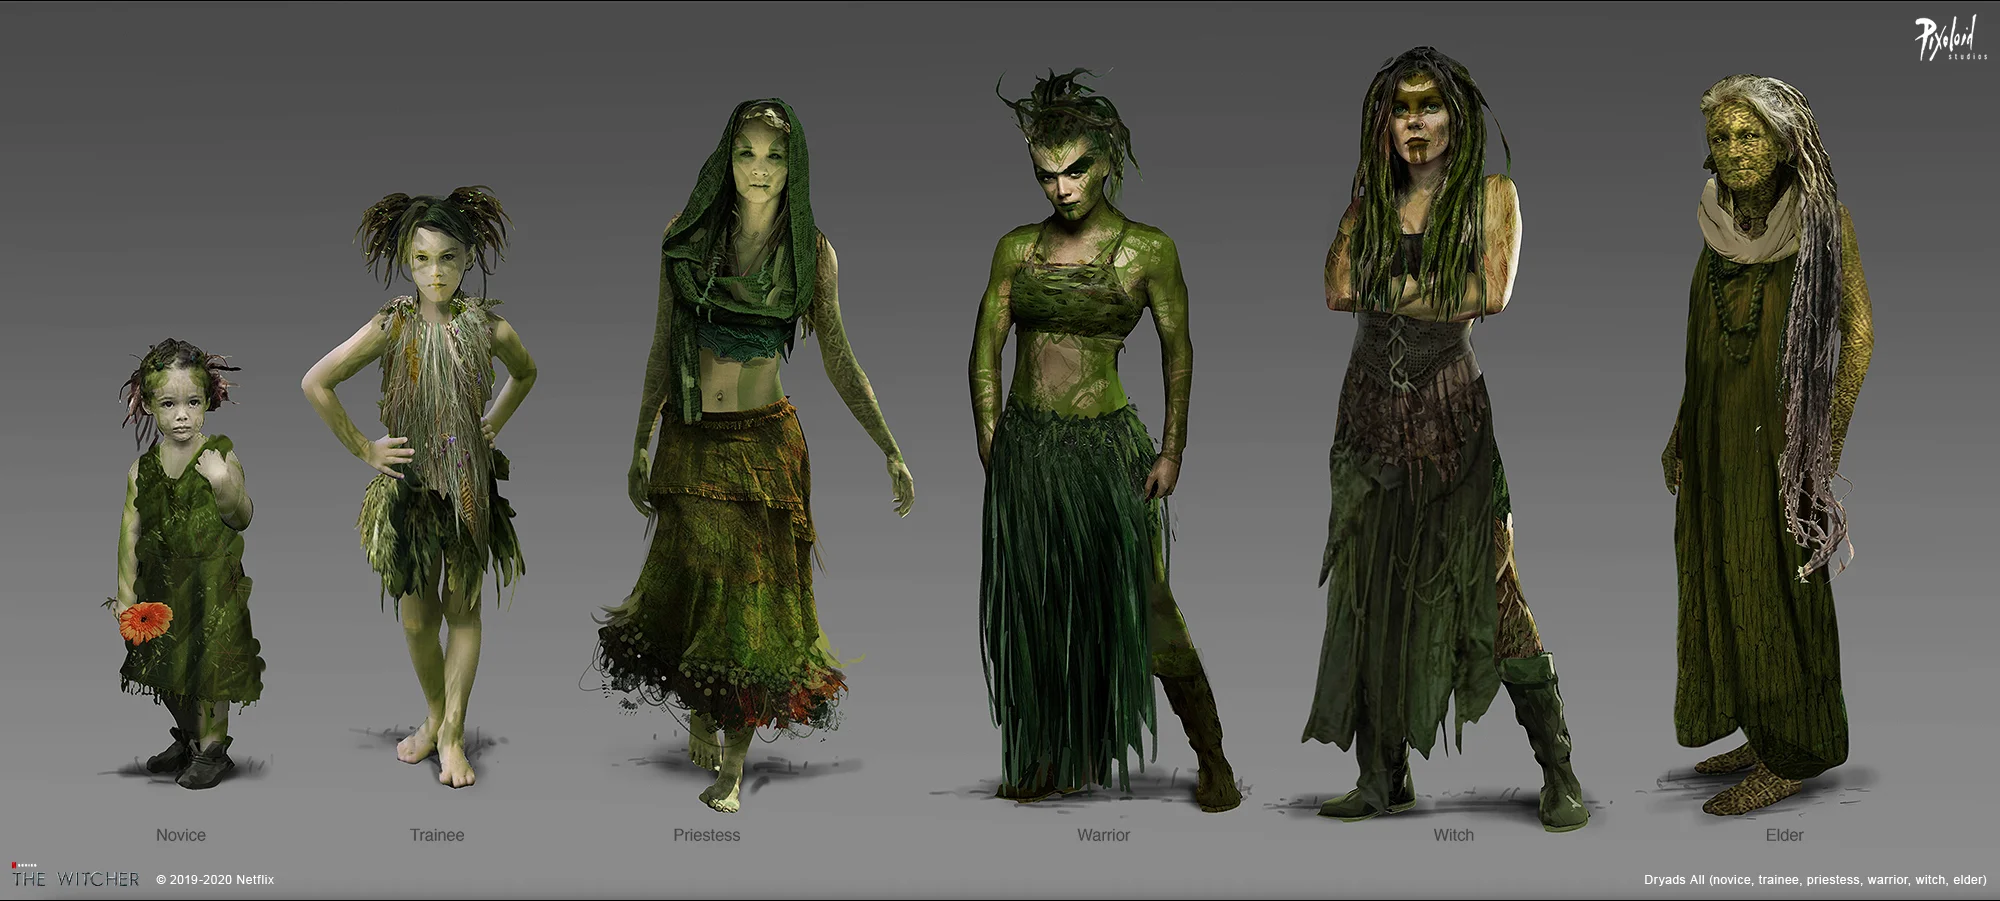 Эльфы, дриады и магия: художники показали концепт-арты для сериала «Ведьмак» - фото 1